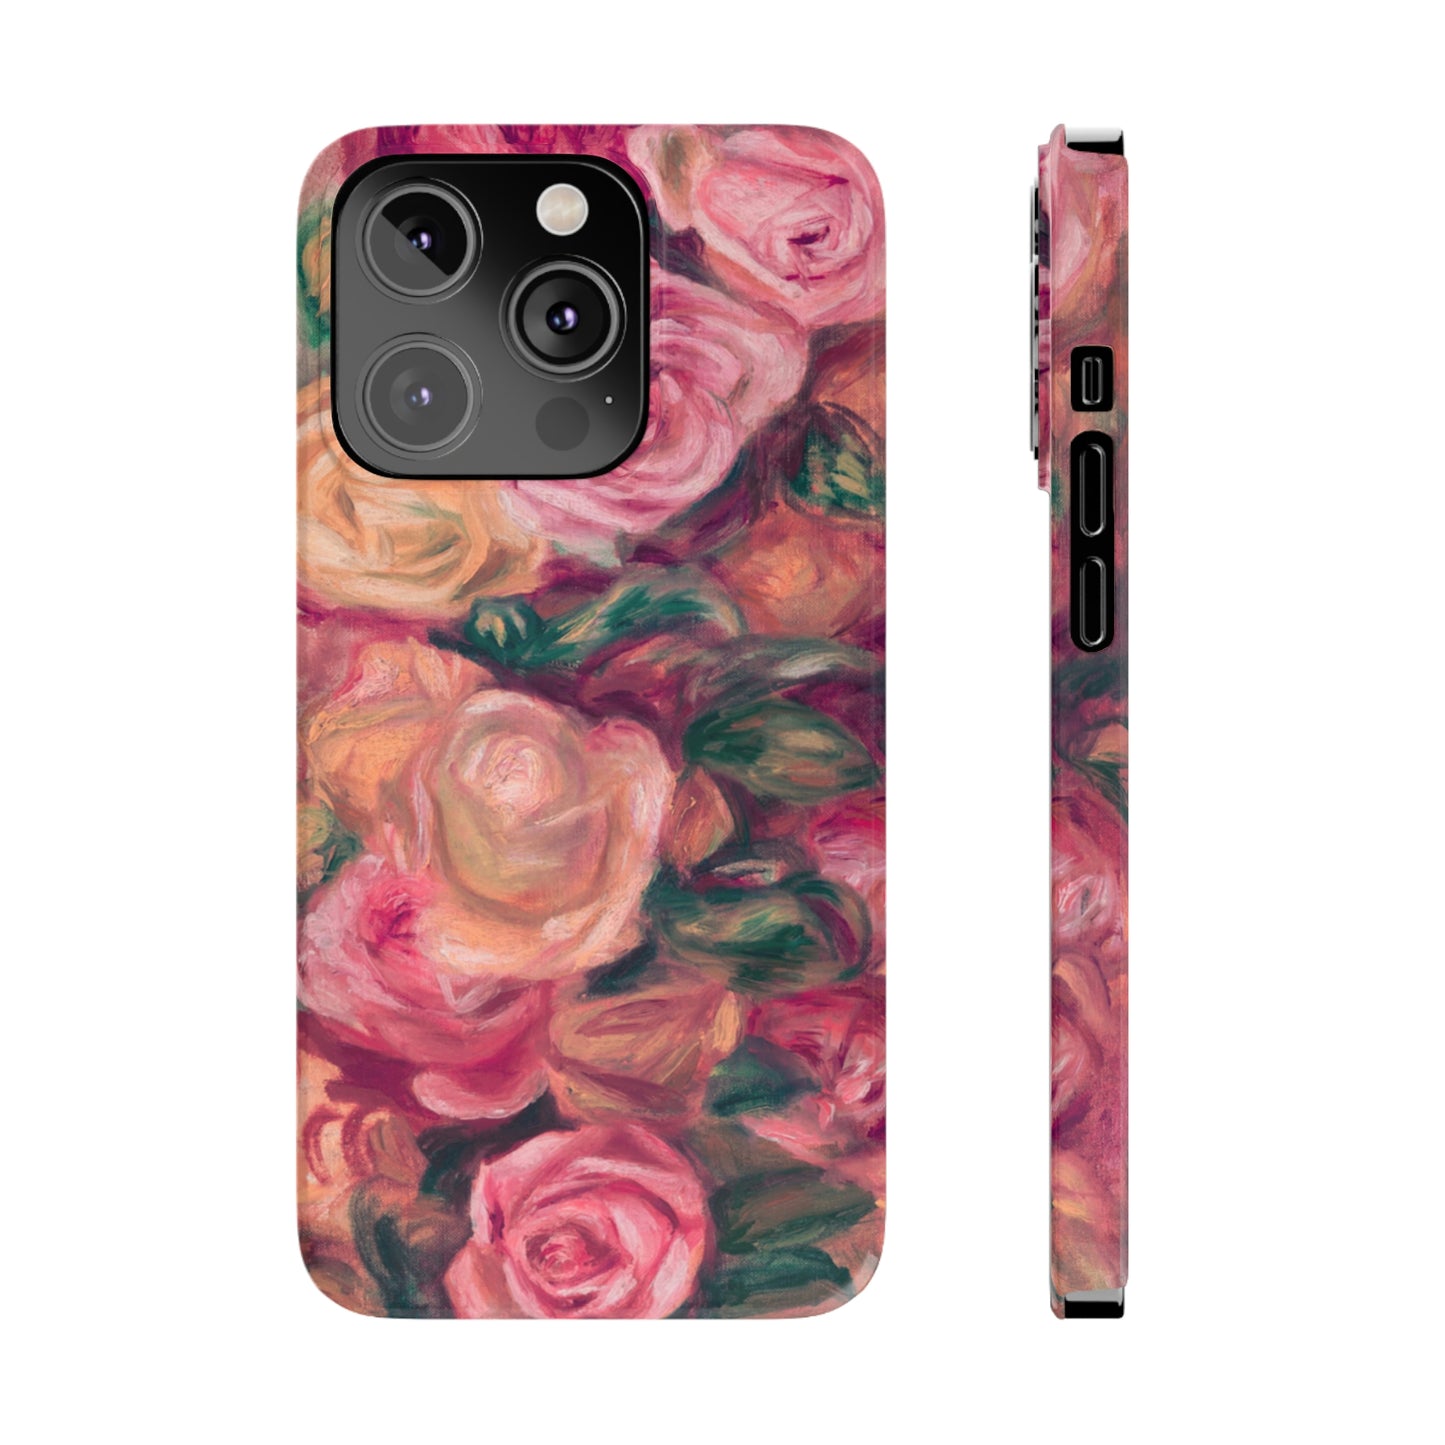 Roses Slim Phone Cases